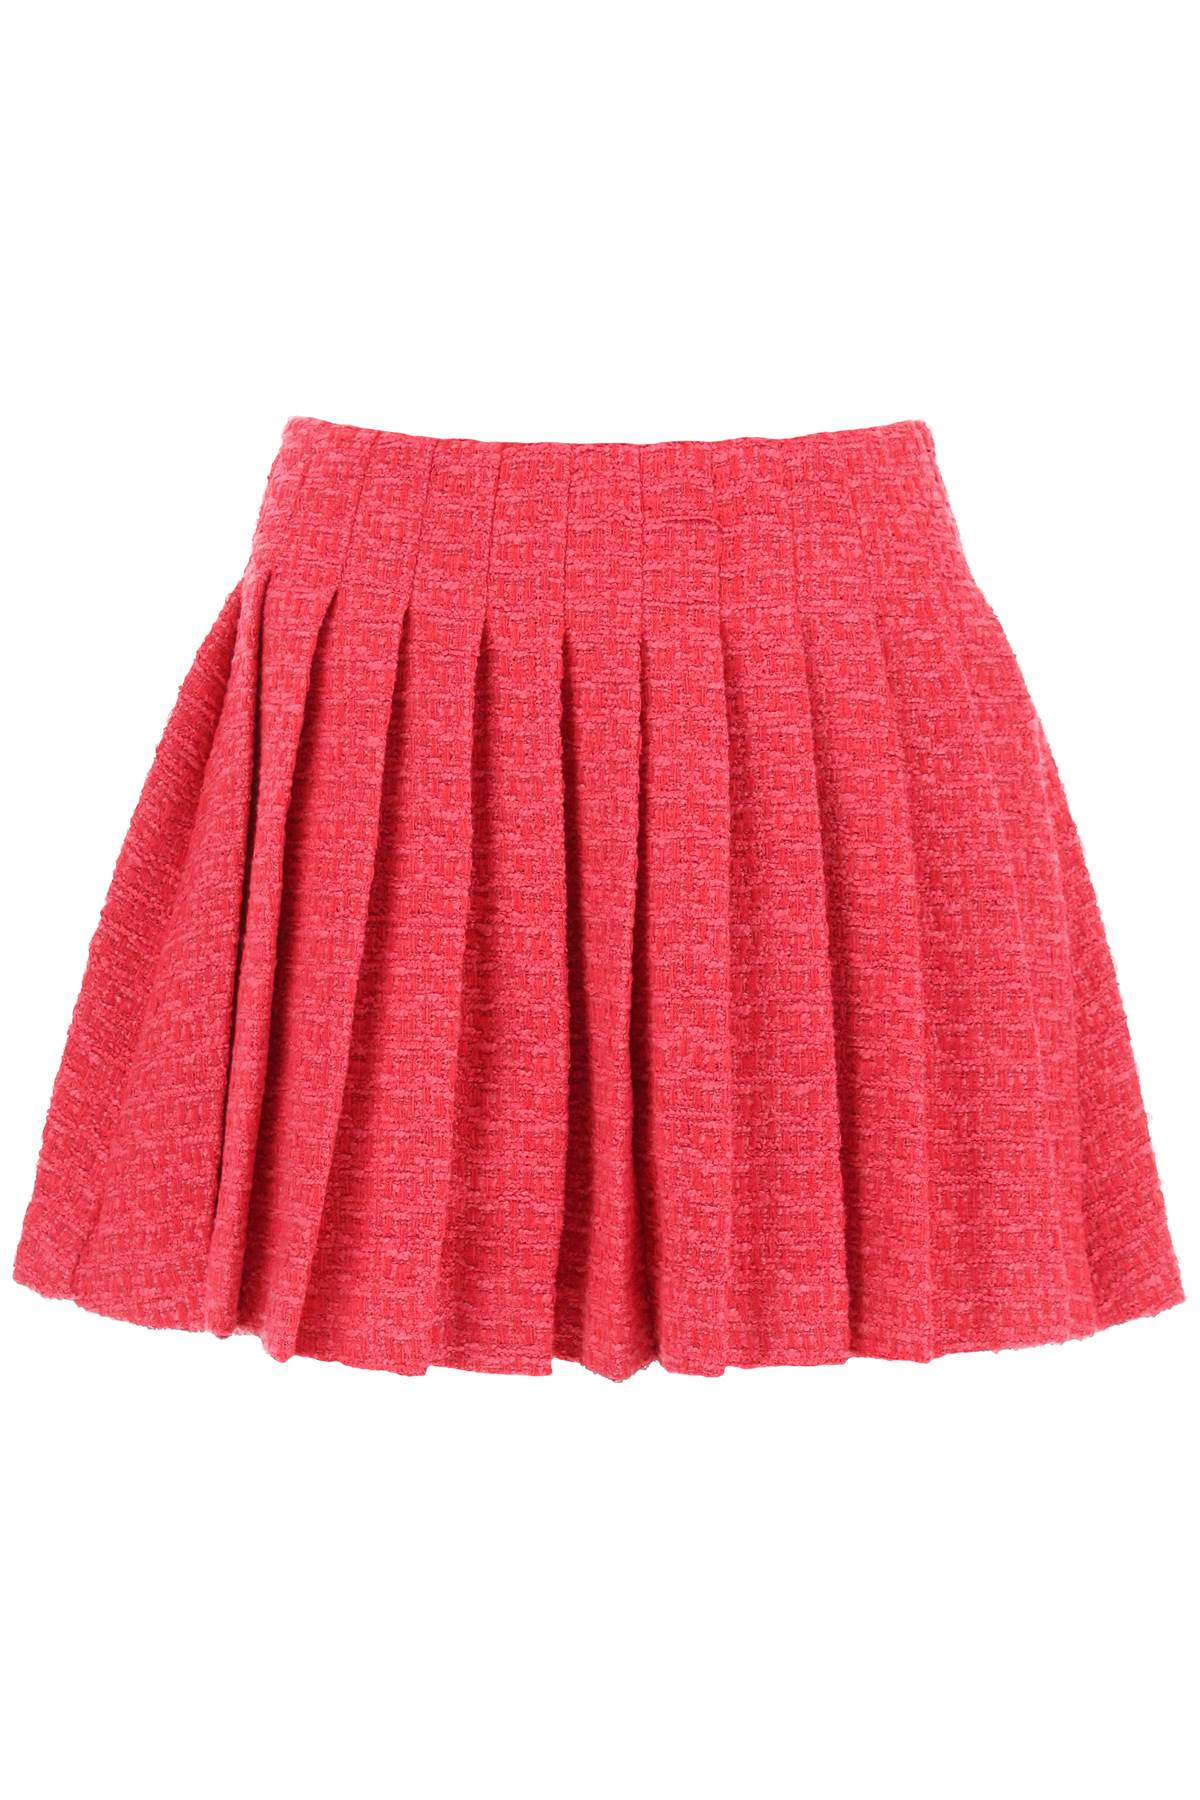 self-portrait Boucle Tweed Pleated Mini Skirt